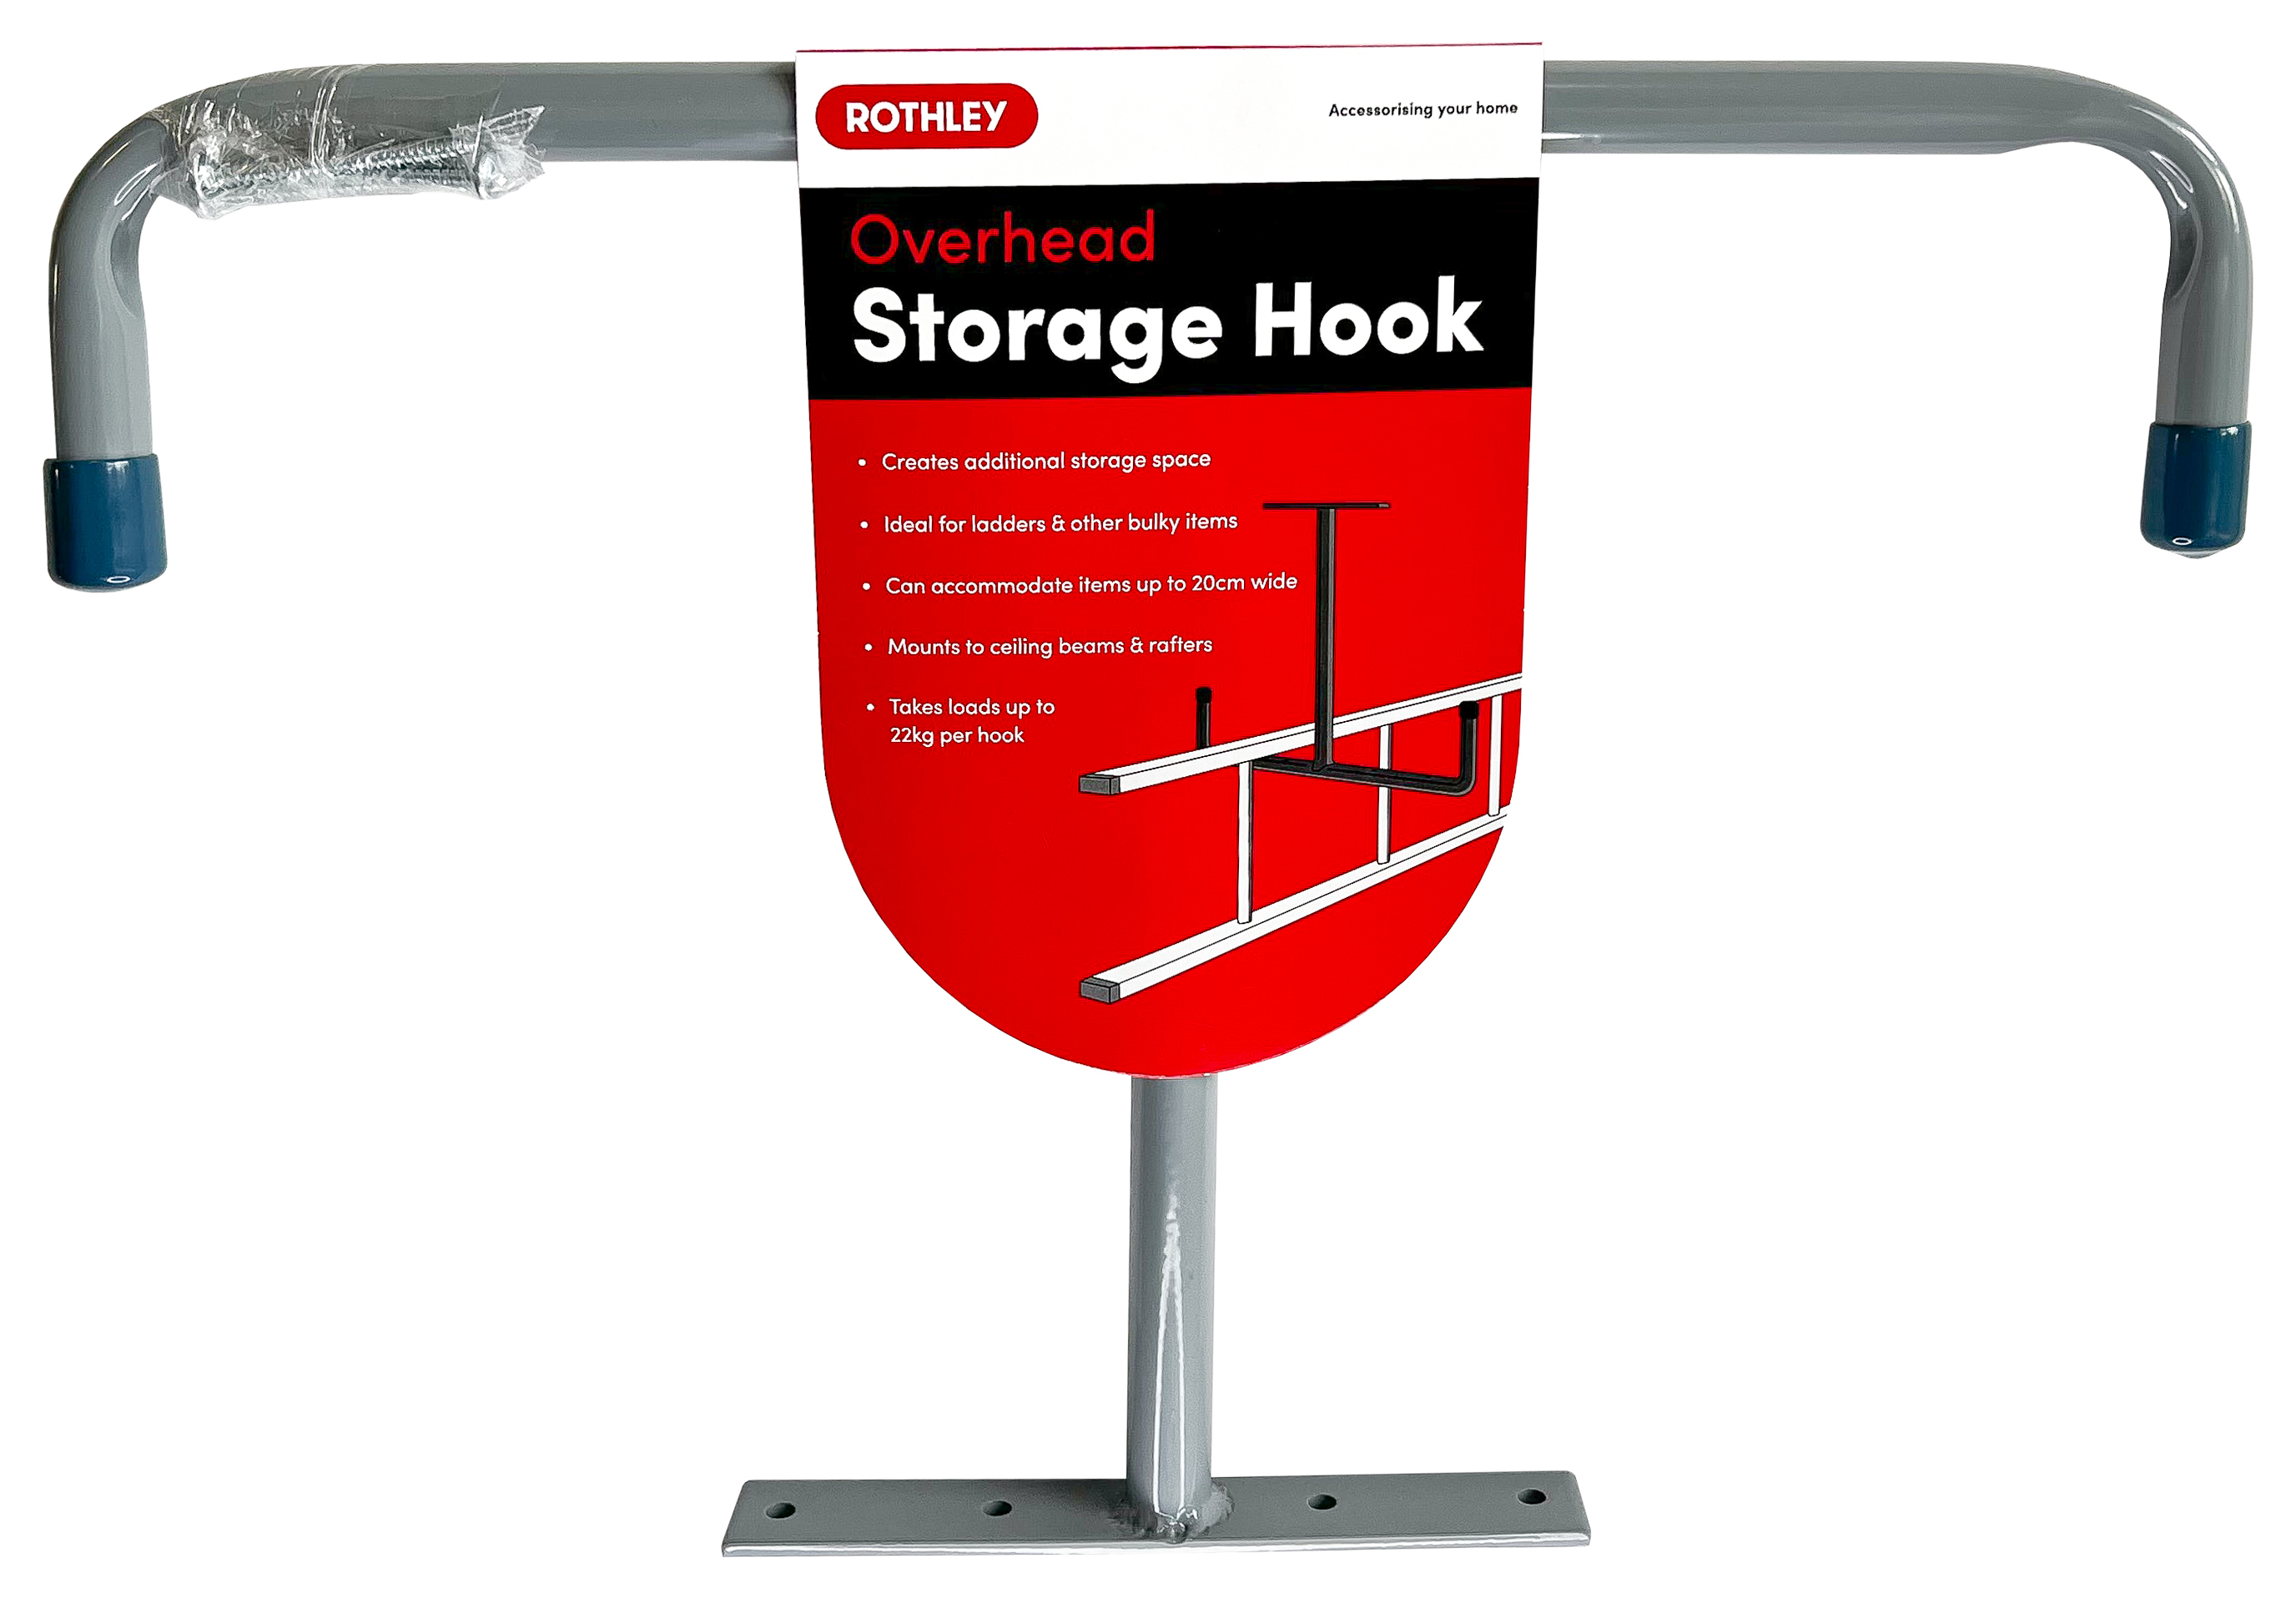 Rothley Overhead Storage Hook